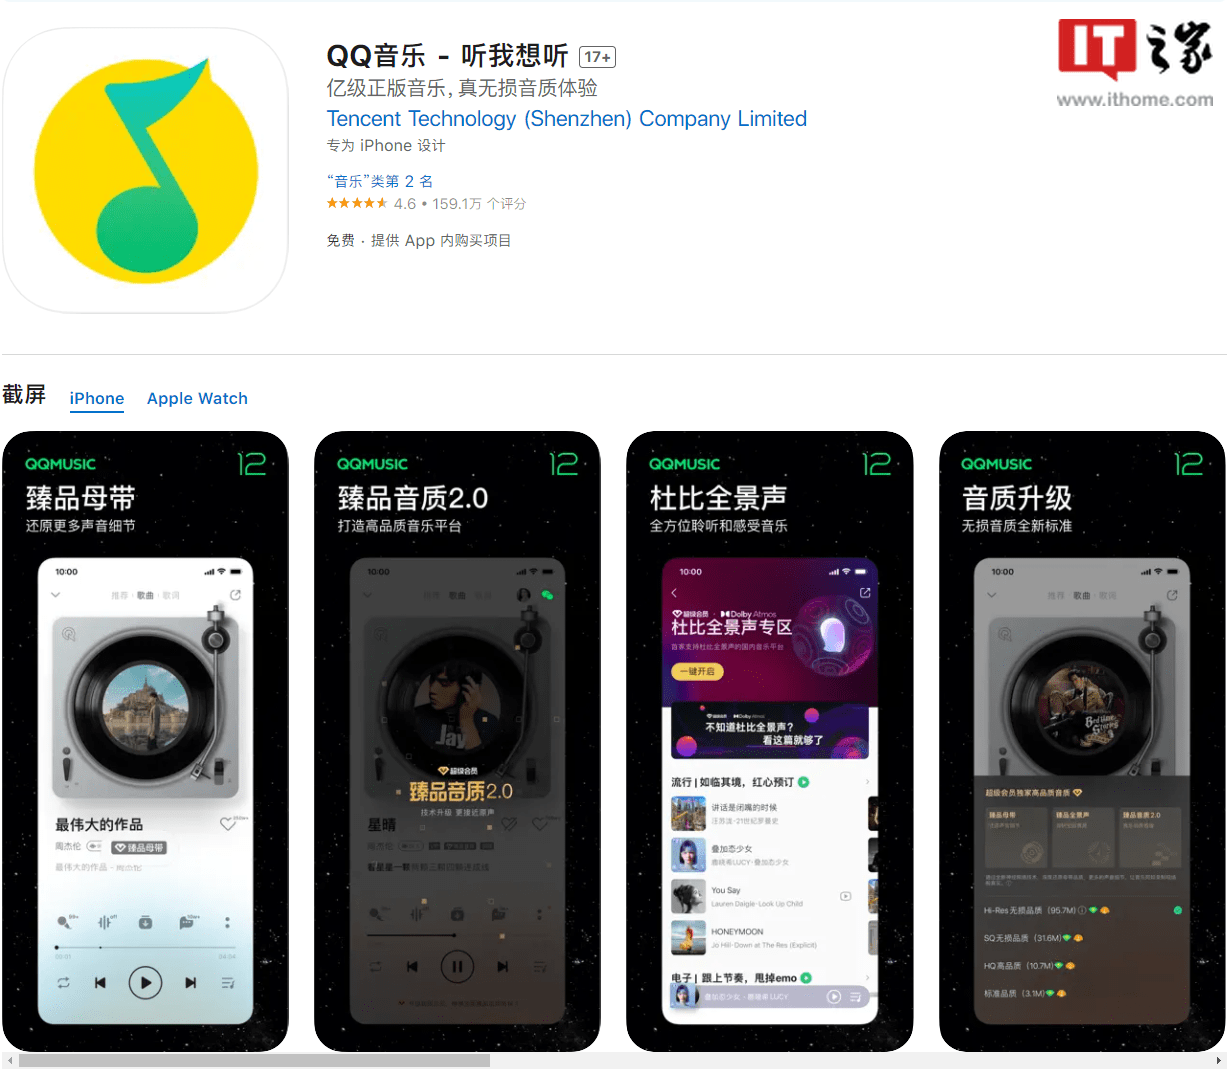 安卓版苹果音乐资料库:腾讯 QQ 音乐 iOS / 安卓版 12.1 发布